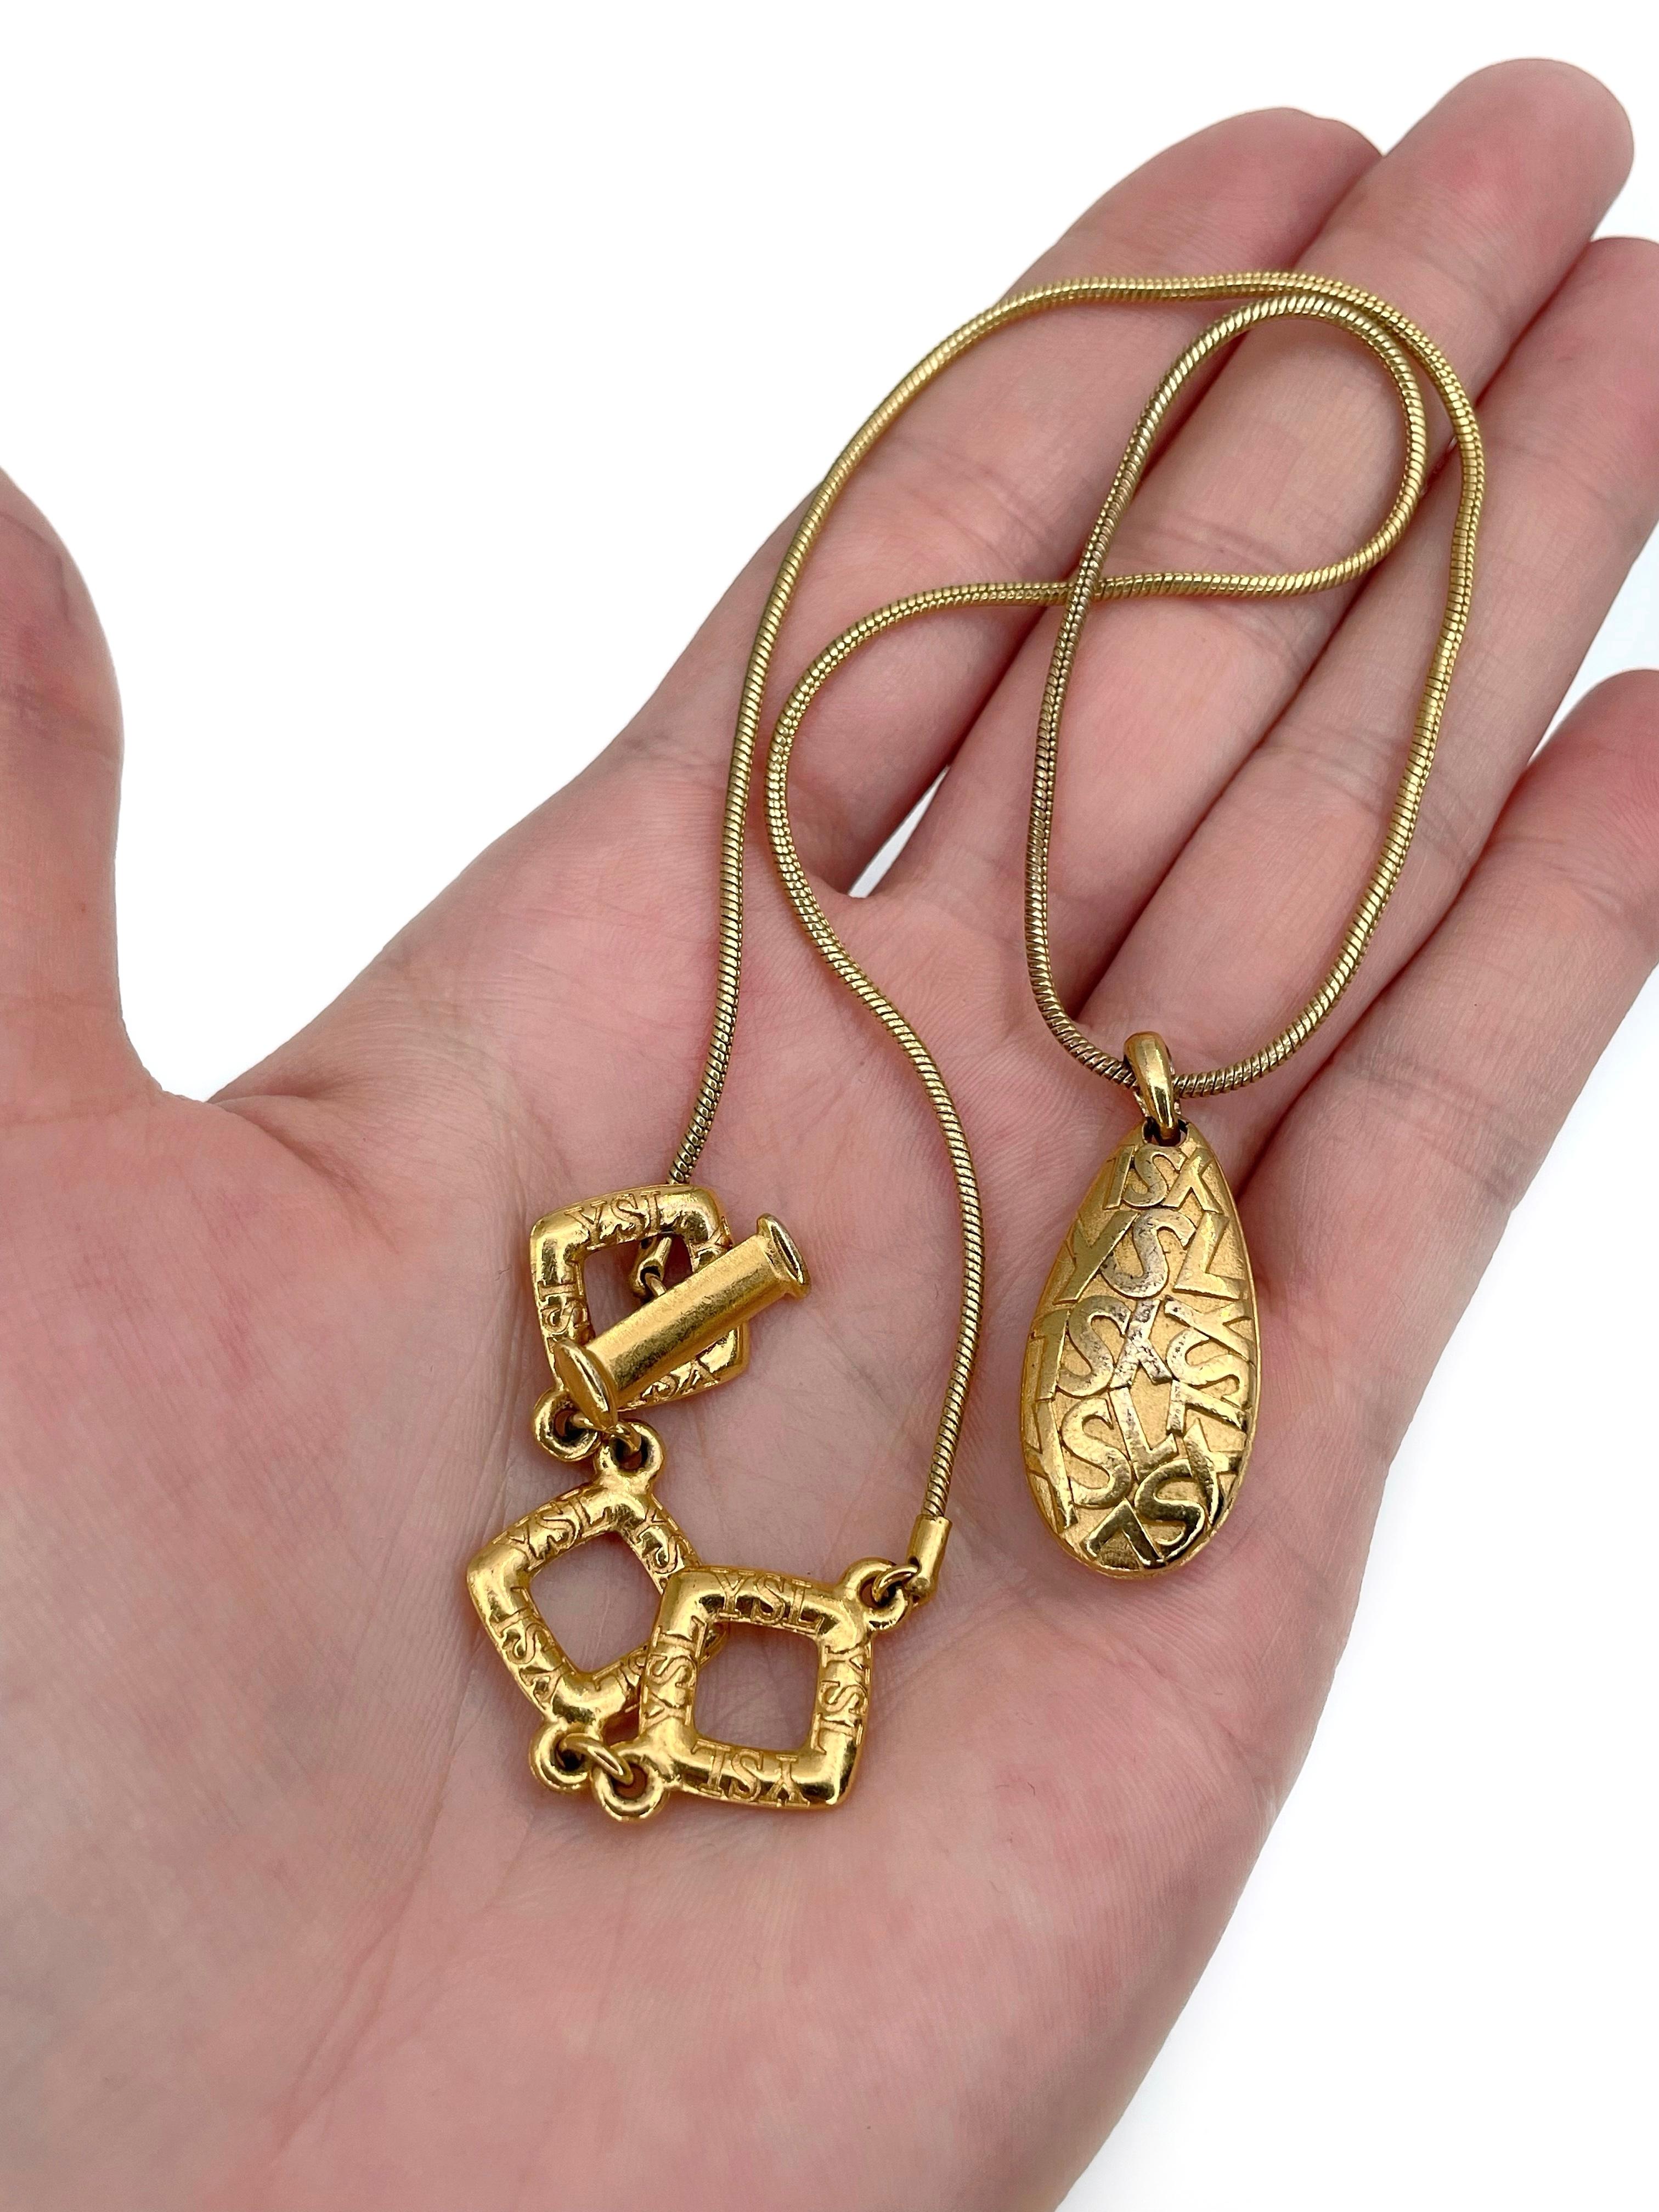 Il s'agit d'un collier à pendentif en forme de goutte avec un monogramme en or, conçu par YSL dans les années 1980. La pièce est plaquée or. 

Signé : 